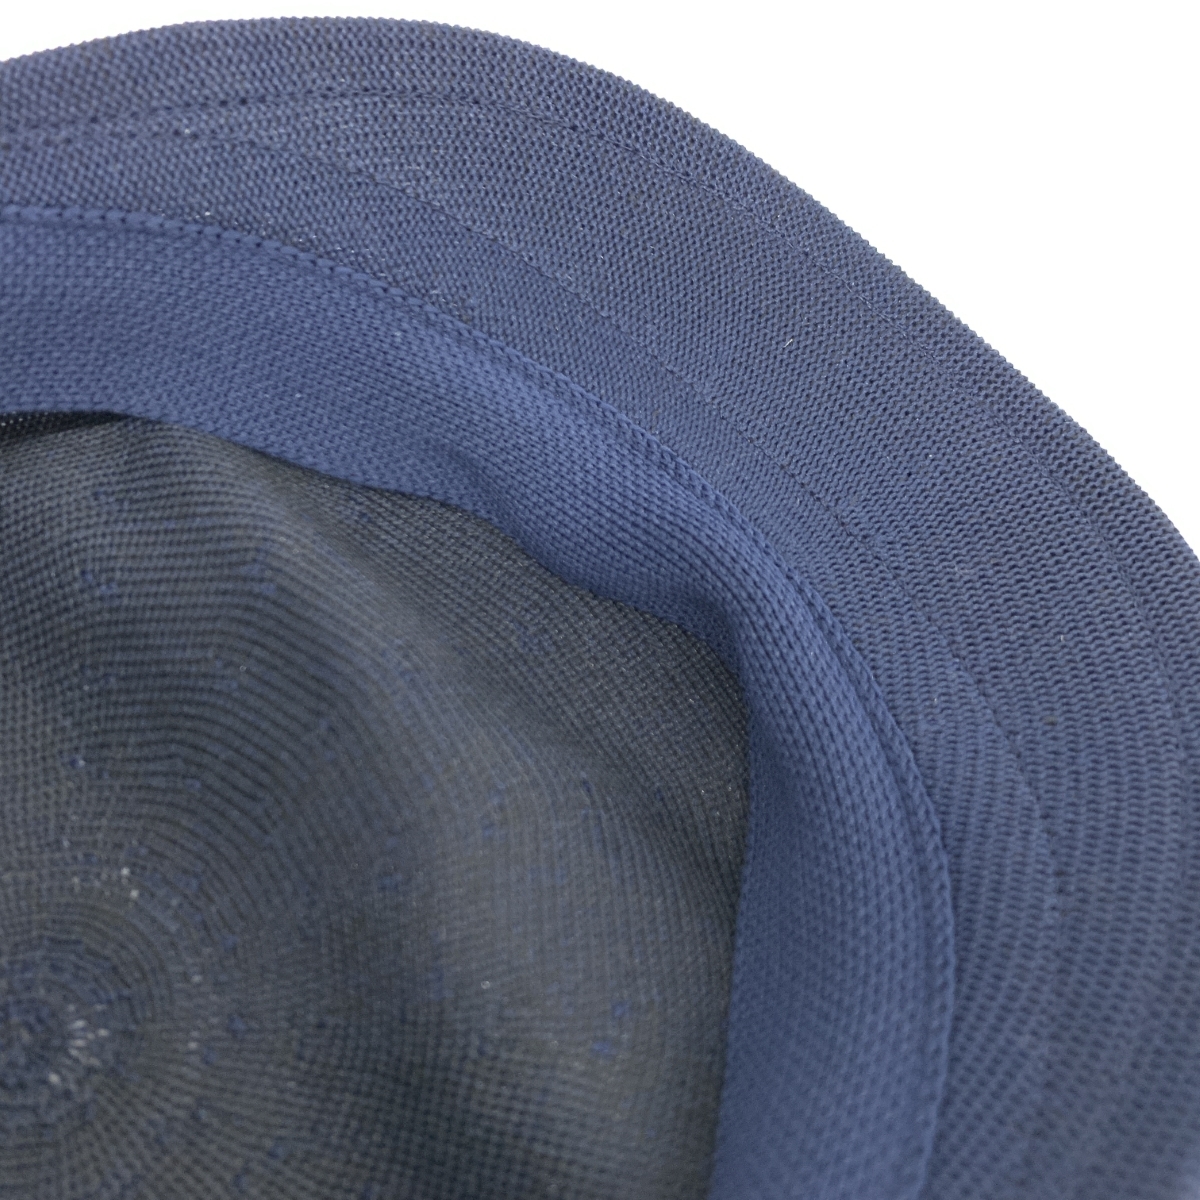 未使用品◆PAUL STUART ポールスチュアート ハンチング ◆ ブルー ポリエステル 日本製 メンズ 帽子 ハット hat 服飾小物_画像5